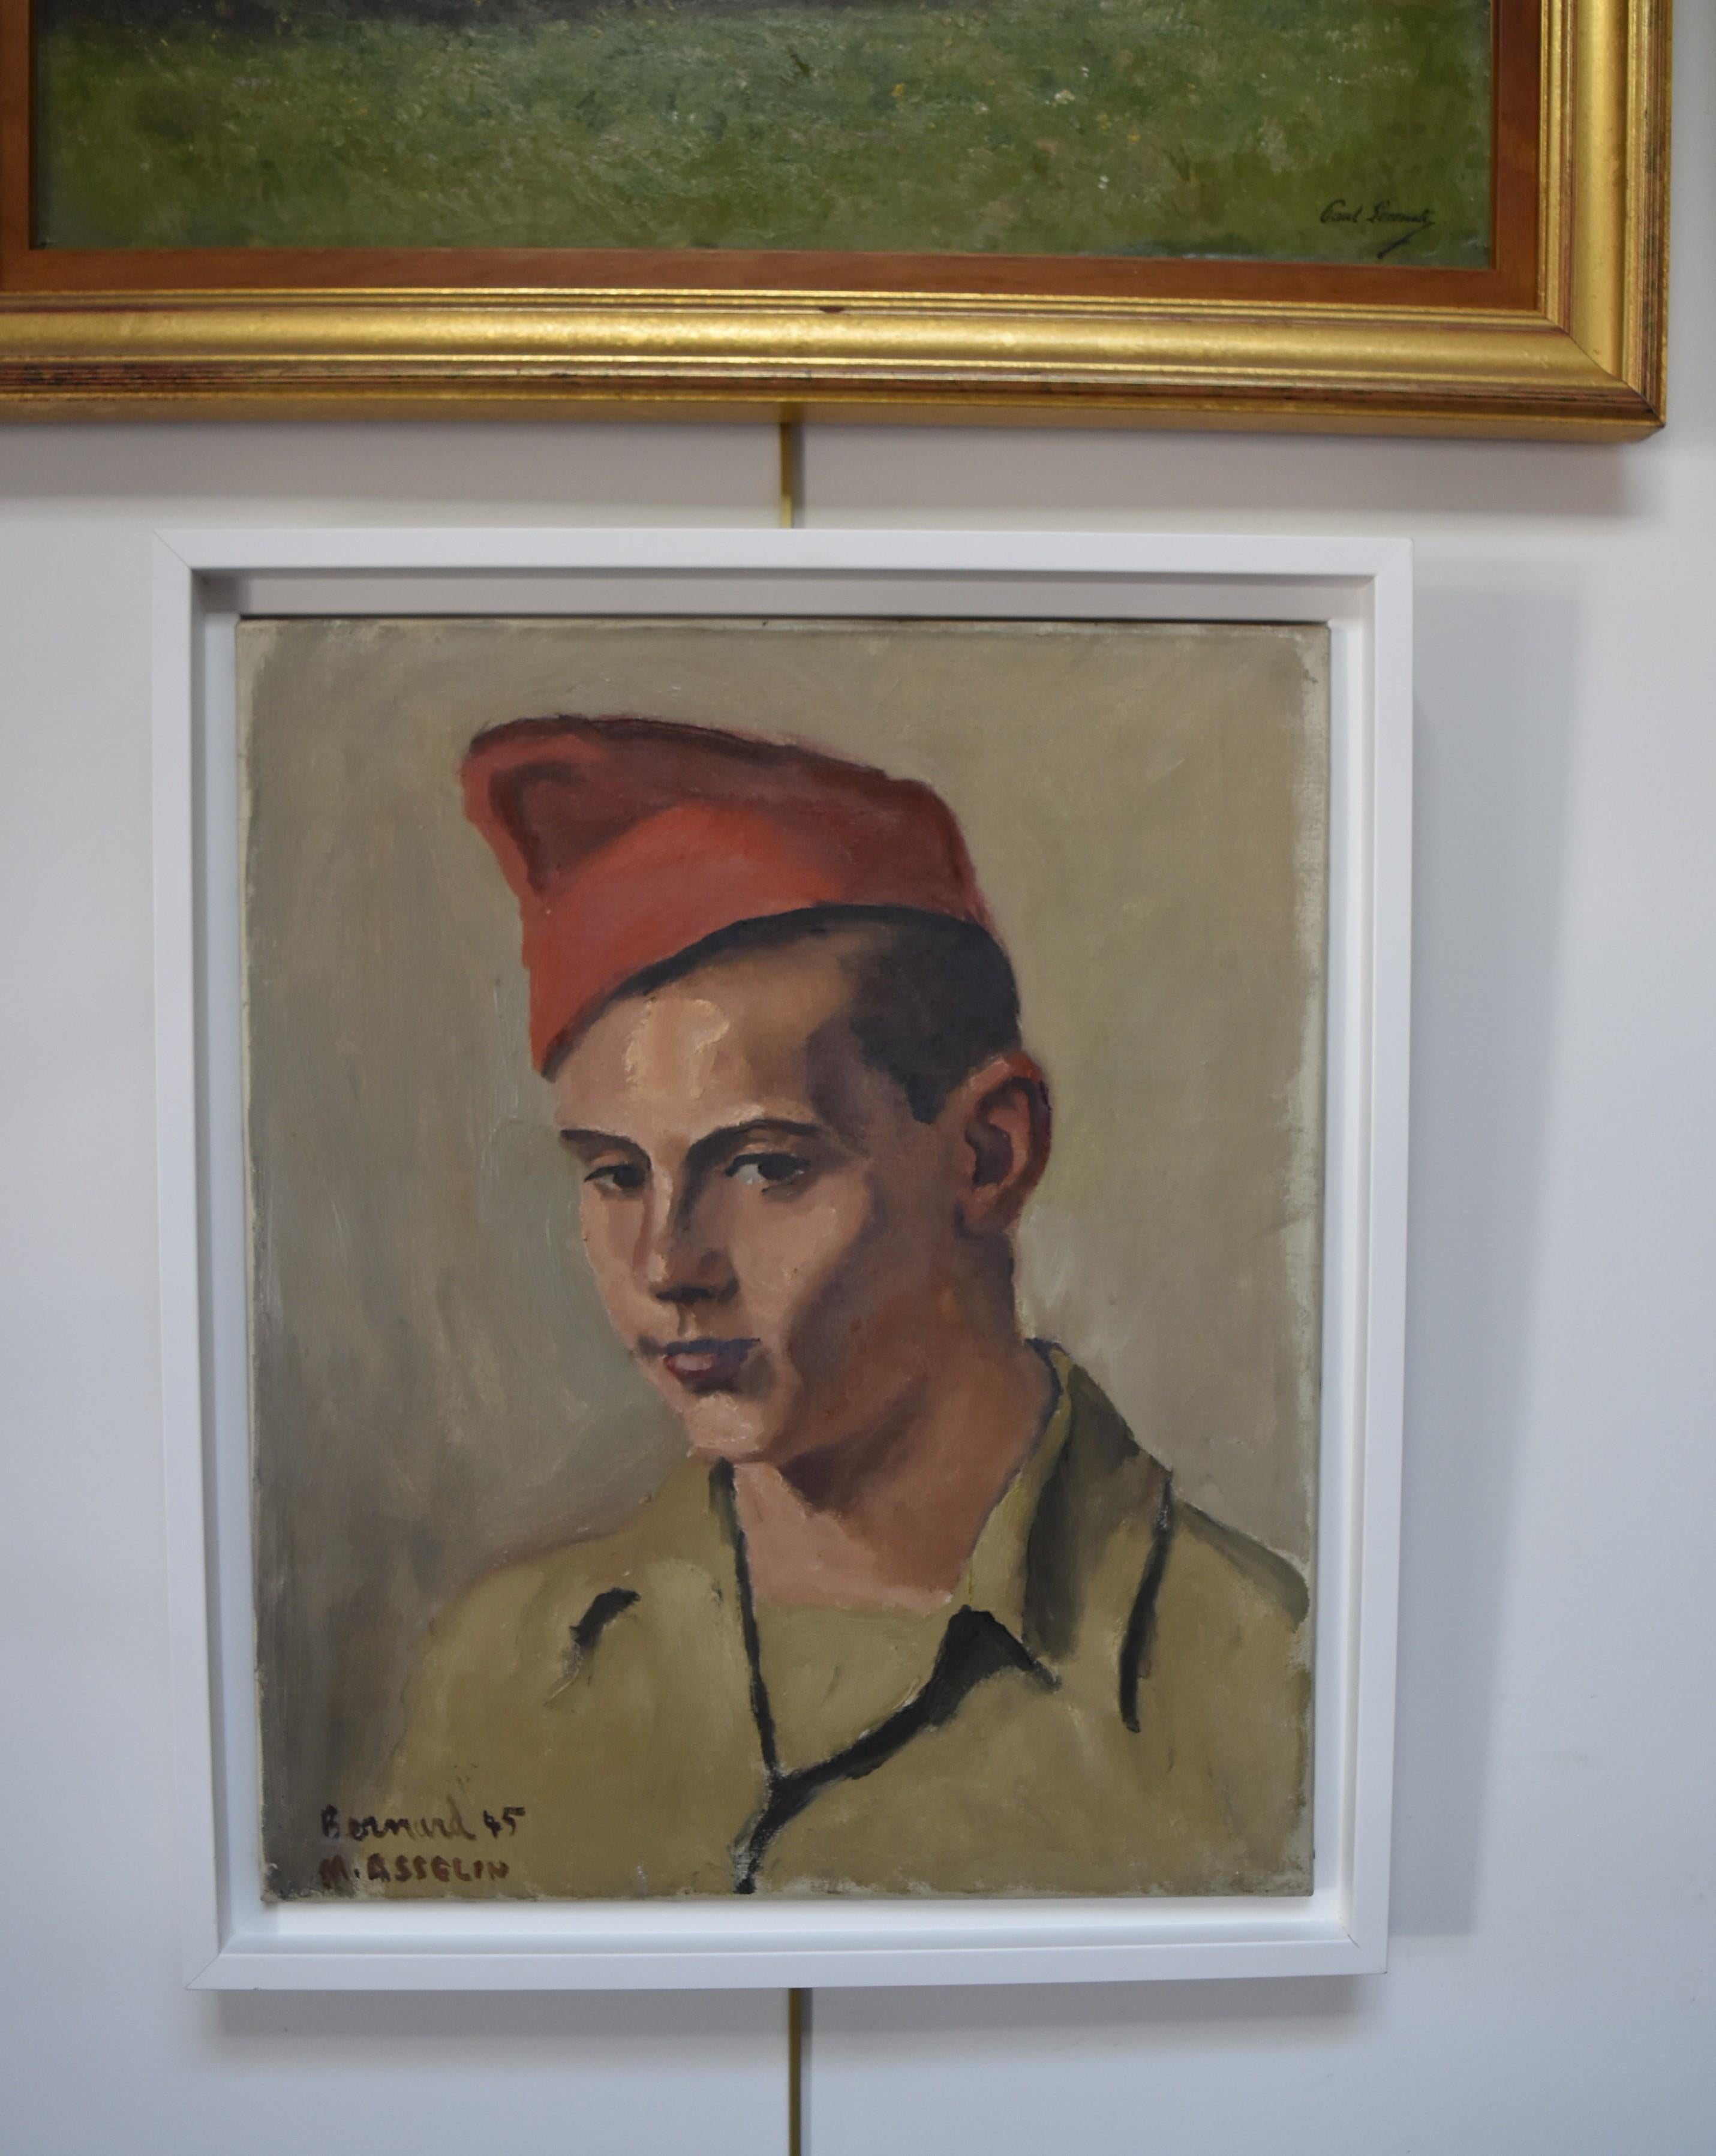 Maurice Asselin (1882-1947) Portrait of Bernard in uniform, 1945, oil on canvas 1